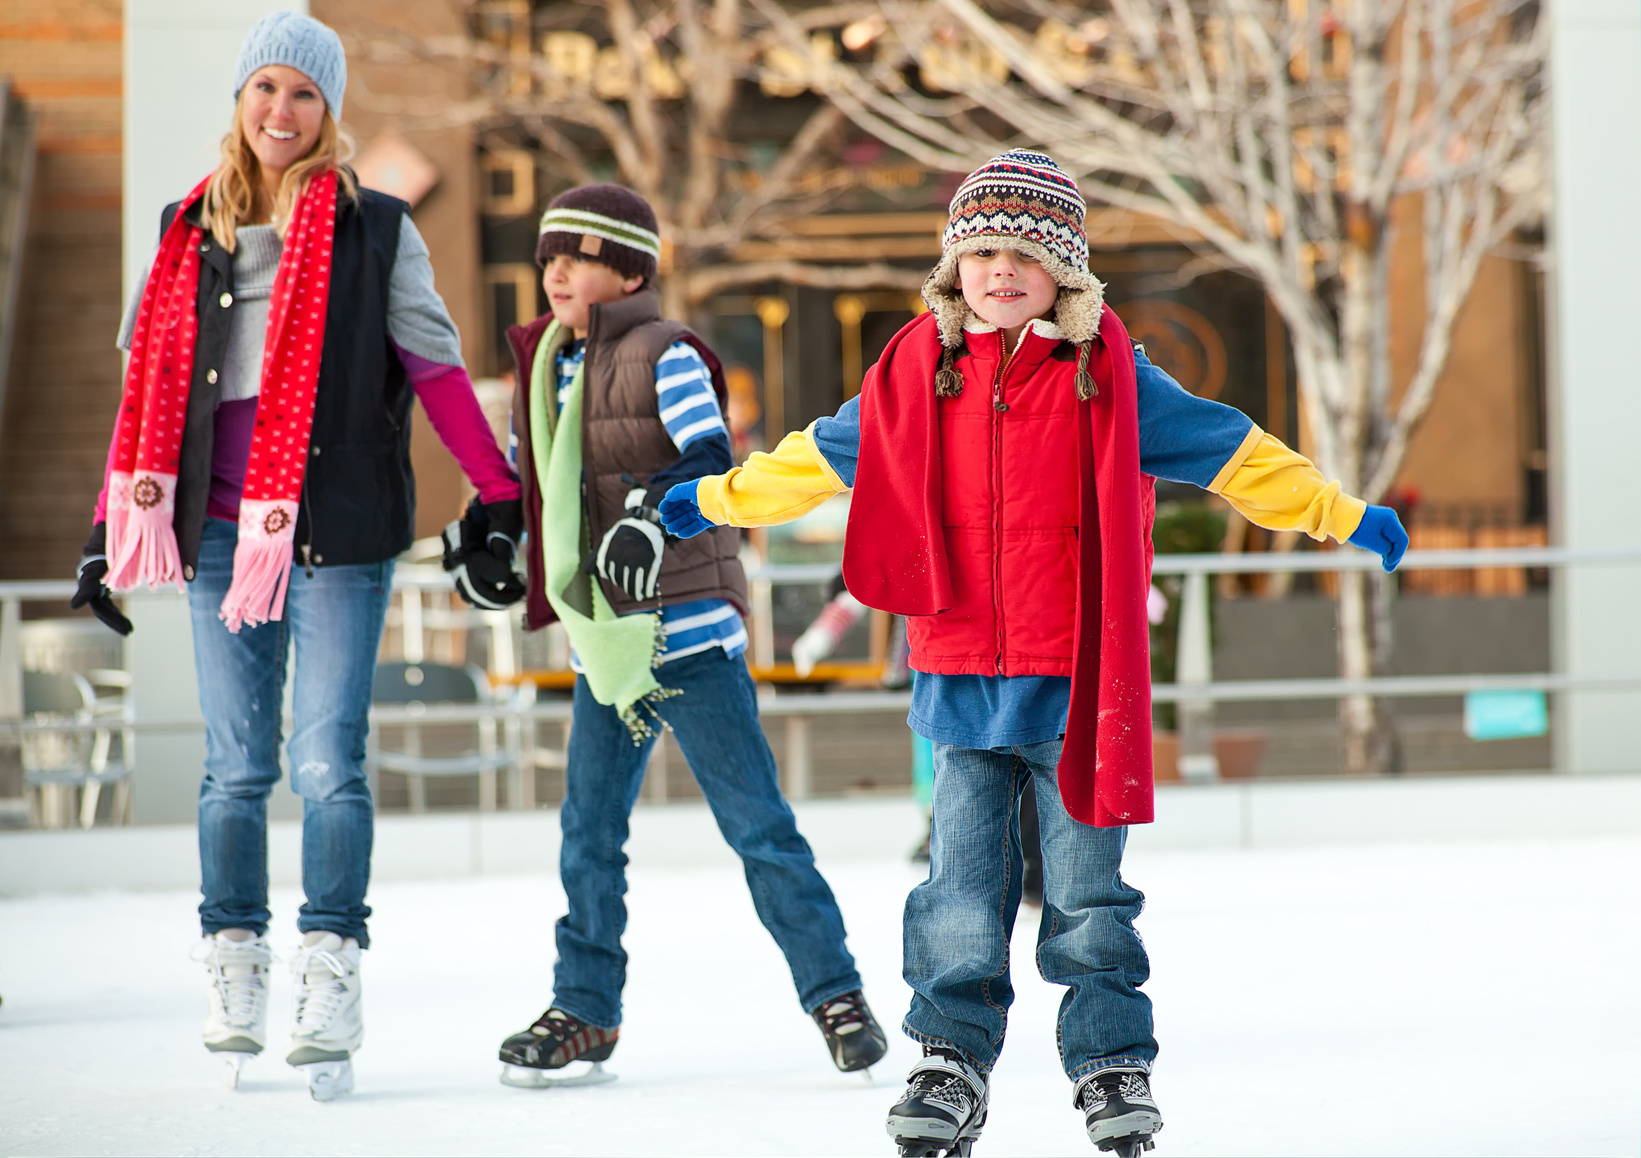 Покататься на коньках на катке. Катание на коньках. Люди катаются на коньках. Дети катаются на коньках. Катание на коньках зимой.